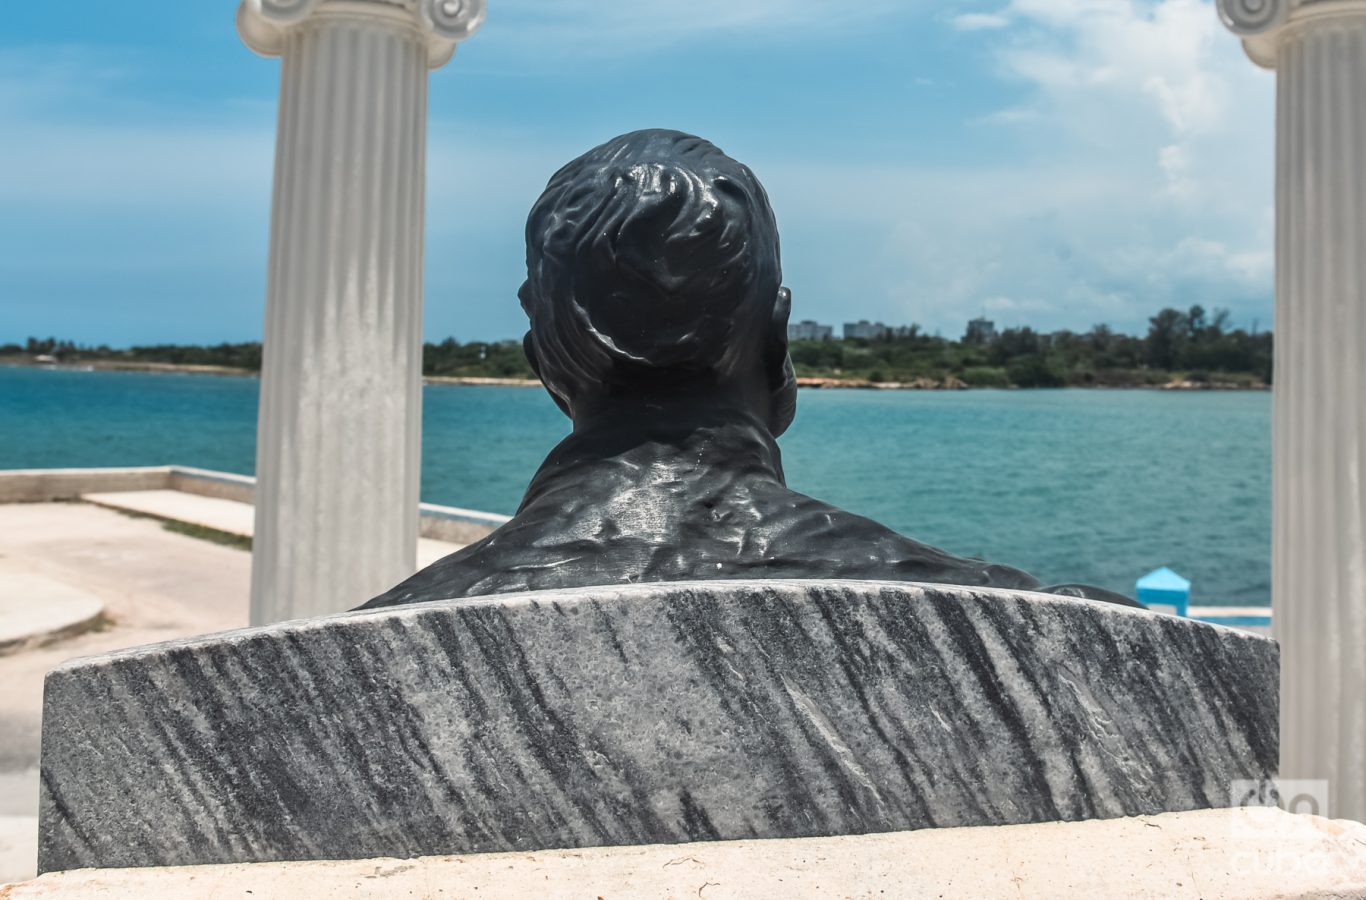 Hemingway mira hacia el mar. O, como se acentúa en la novela, “hacia la mar”. Foto: Kaloian.